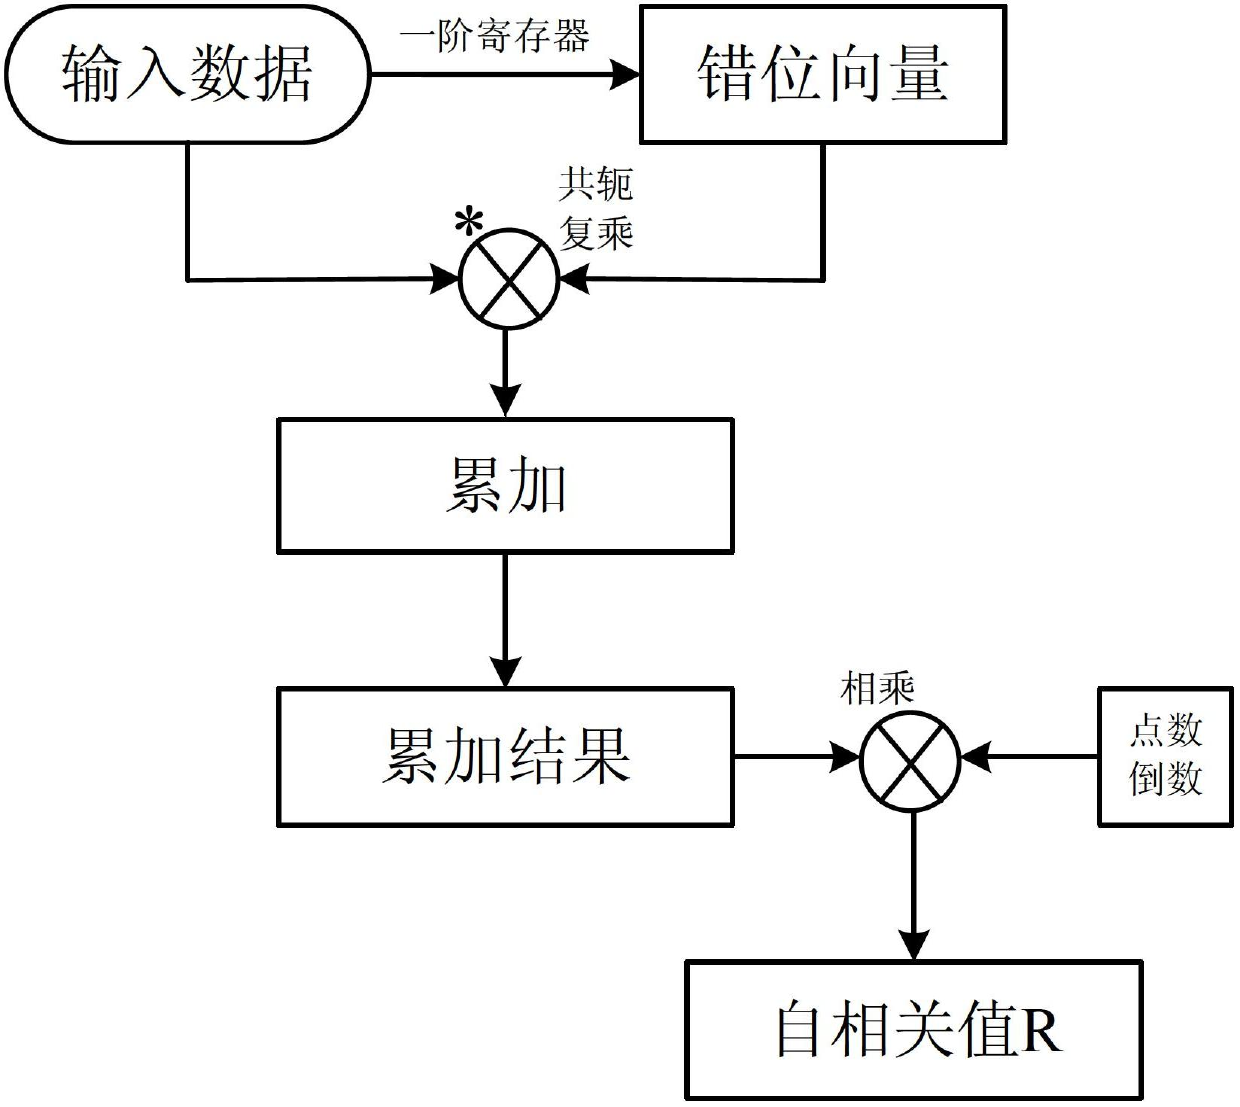 Doppler centroid estimation method based on field programmable gate array (FPGA)